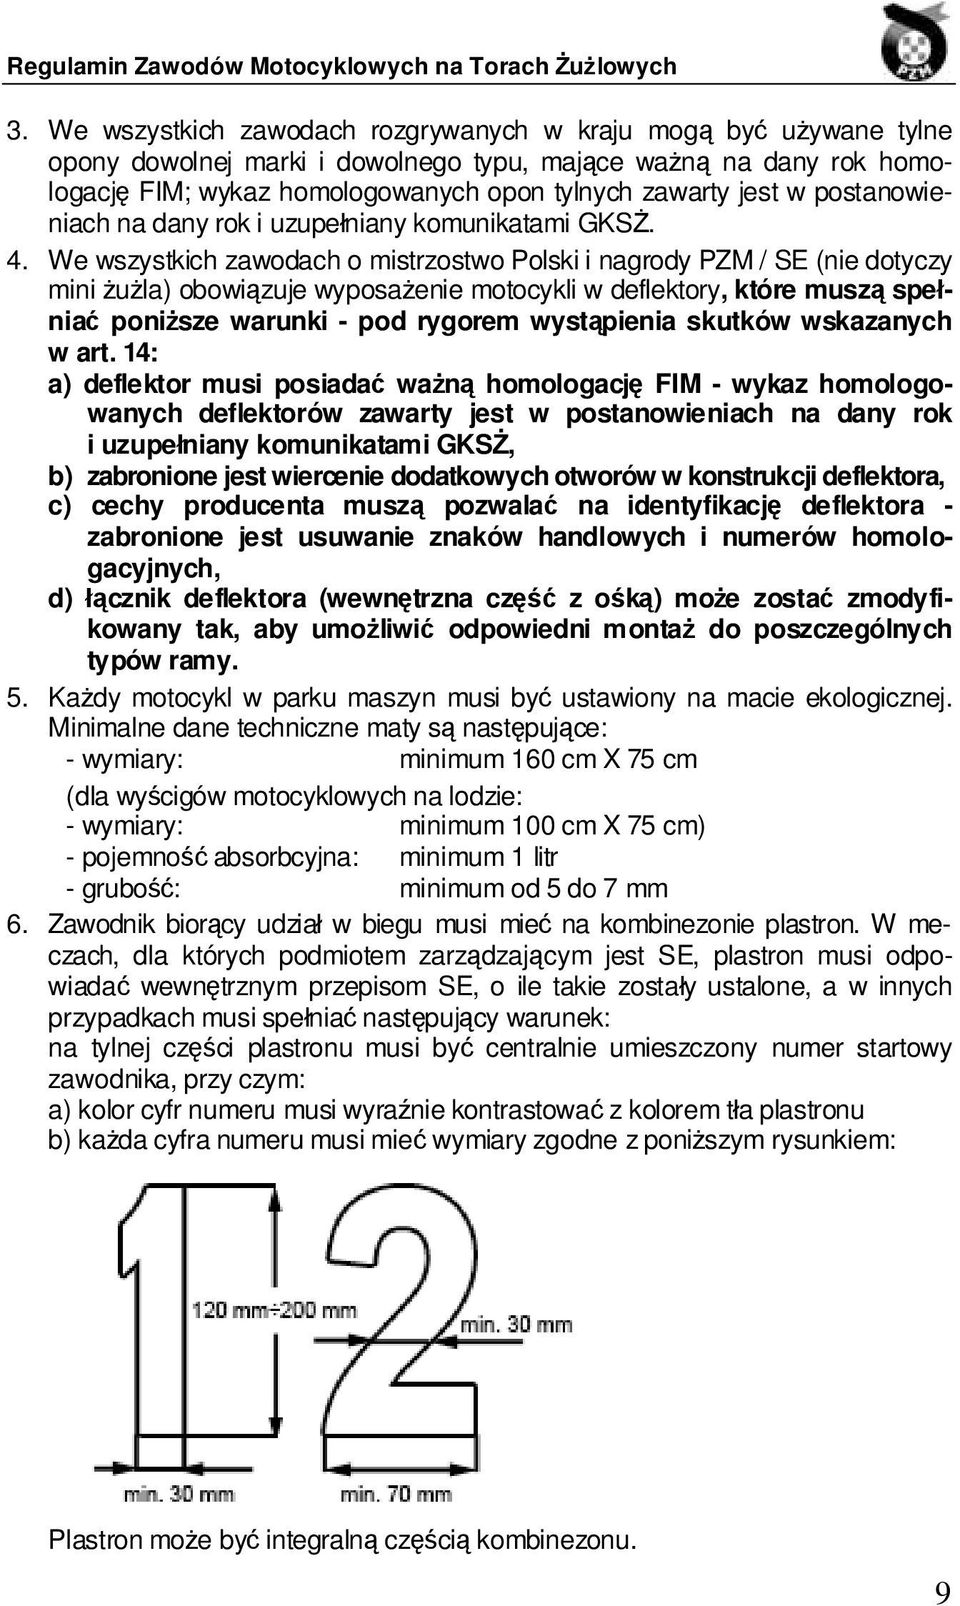 We wszystkich zawodach o mistrzostwo Polski i nagrody PZM / SE (nie dotyczy mini żużla) obowiązuje wyposażenie motocykli w deflektory, które muszą spełniać poniższe warunki - pod rygorem wystąpienia